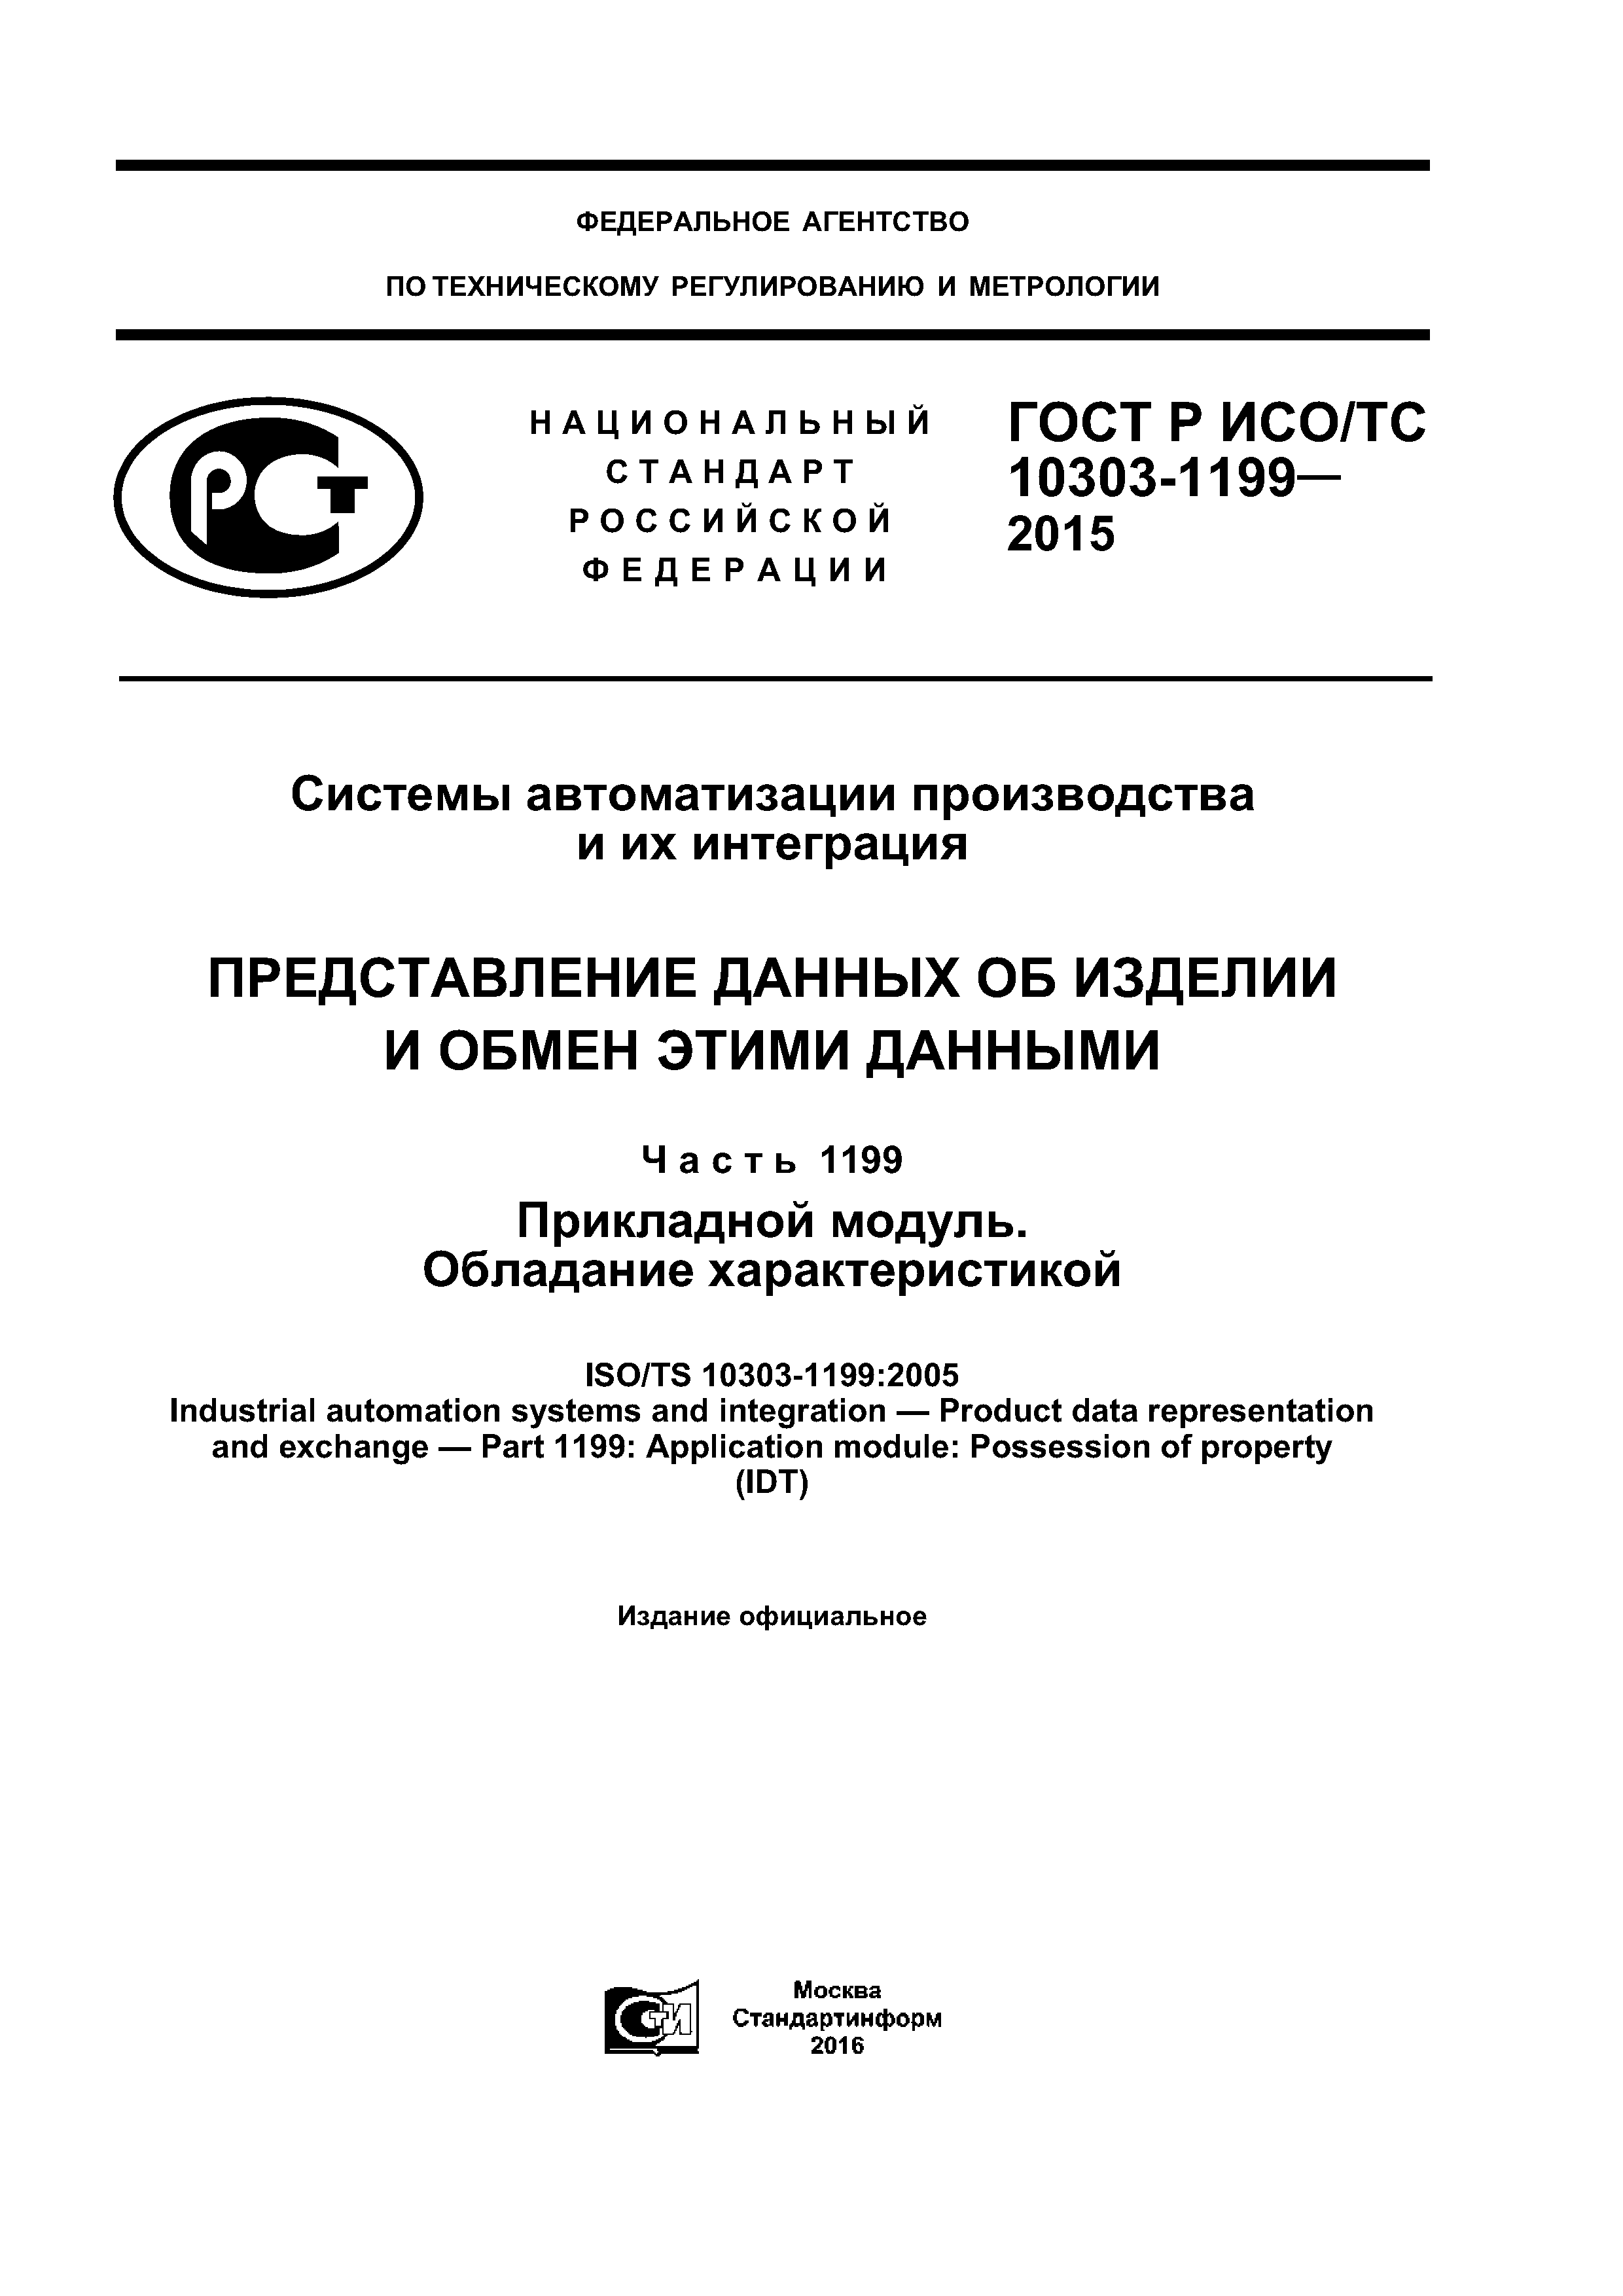 ГОСТ Р ИСО/ТС 10303-1199-2015